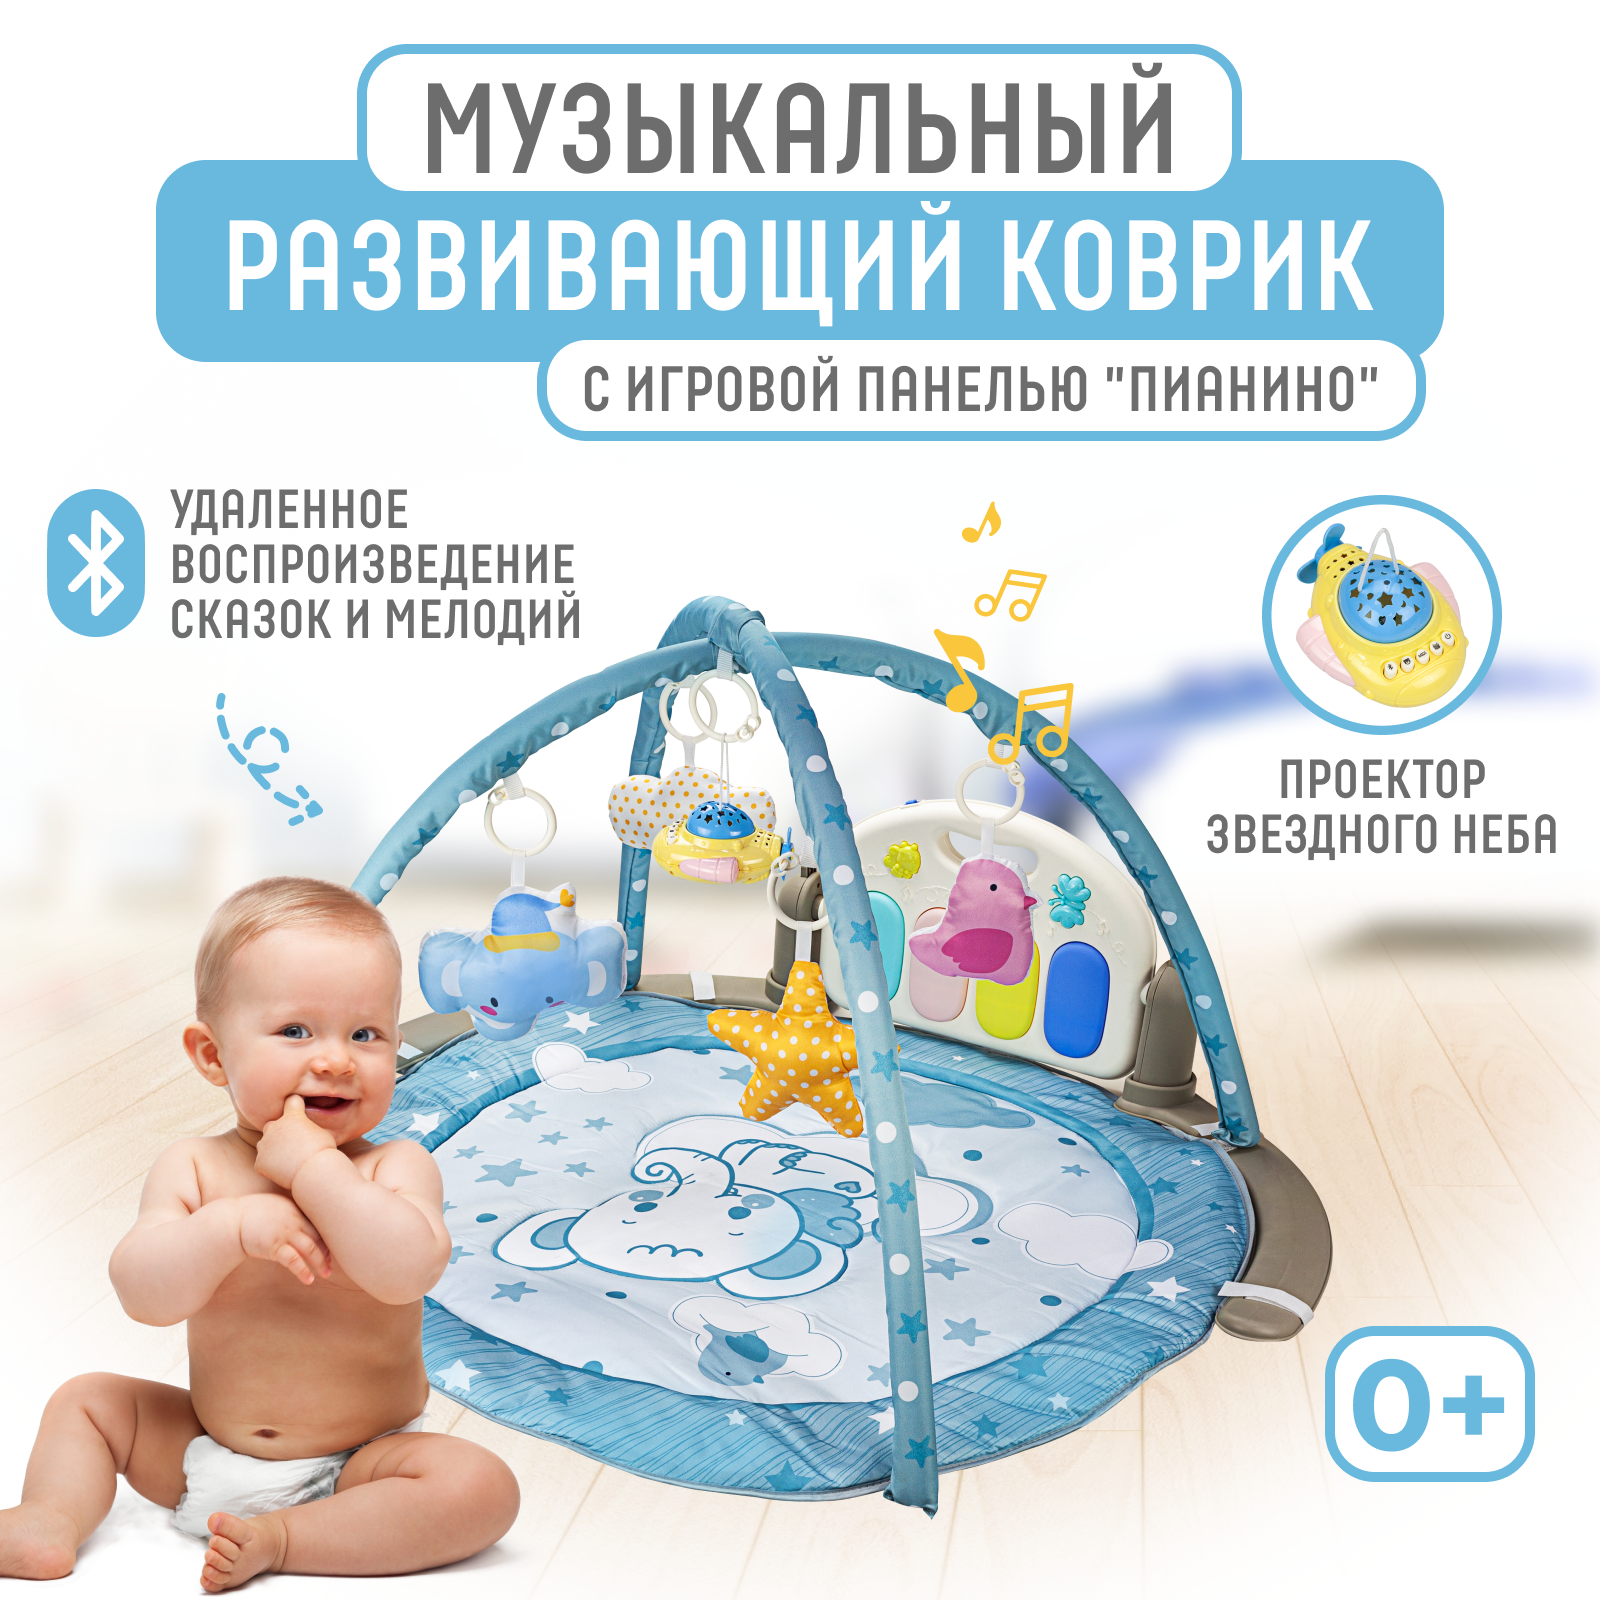 Развивающий музыкальный коврик Solmax для новорожденных с проектором и Bluetooth, голубой музыкальный развивающий коврик с пианино русская озвучка свет голубой